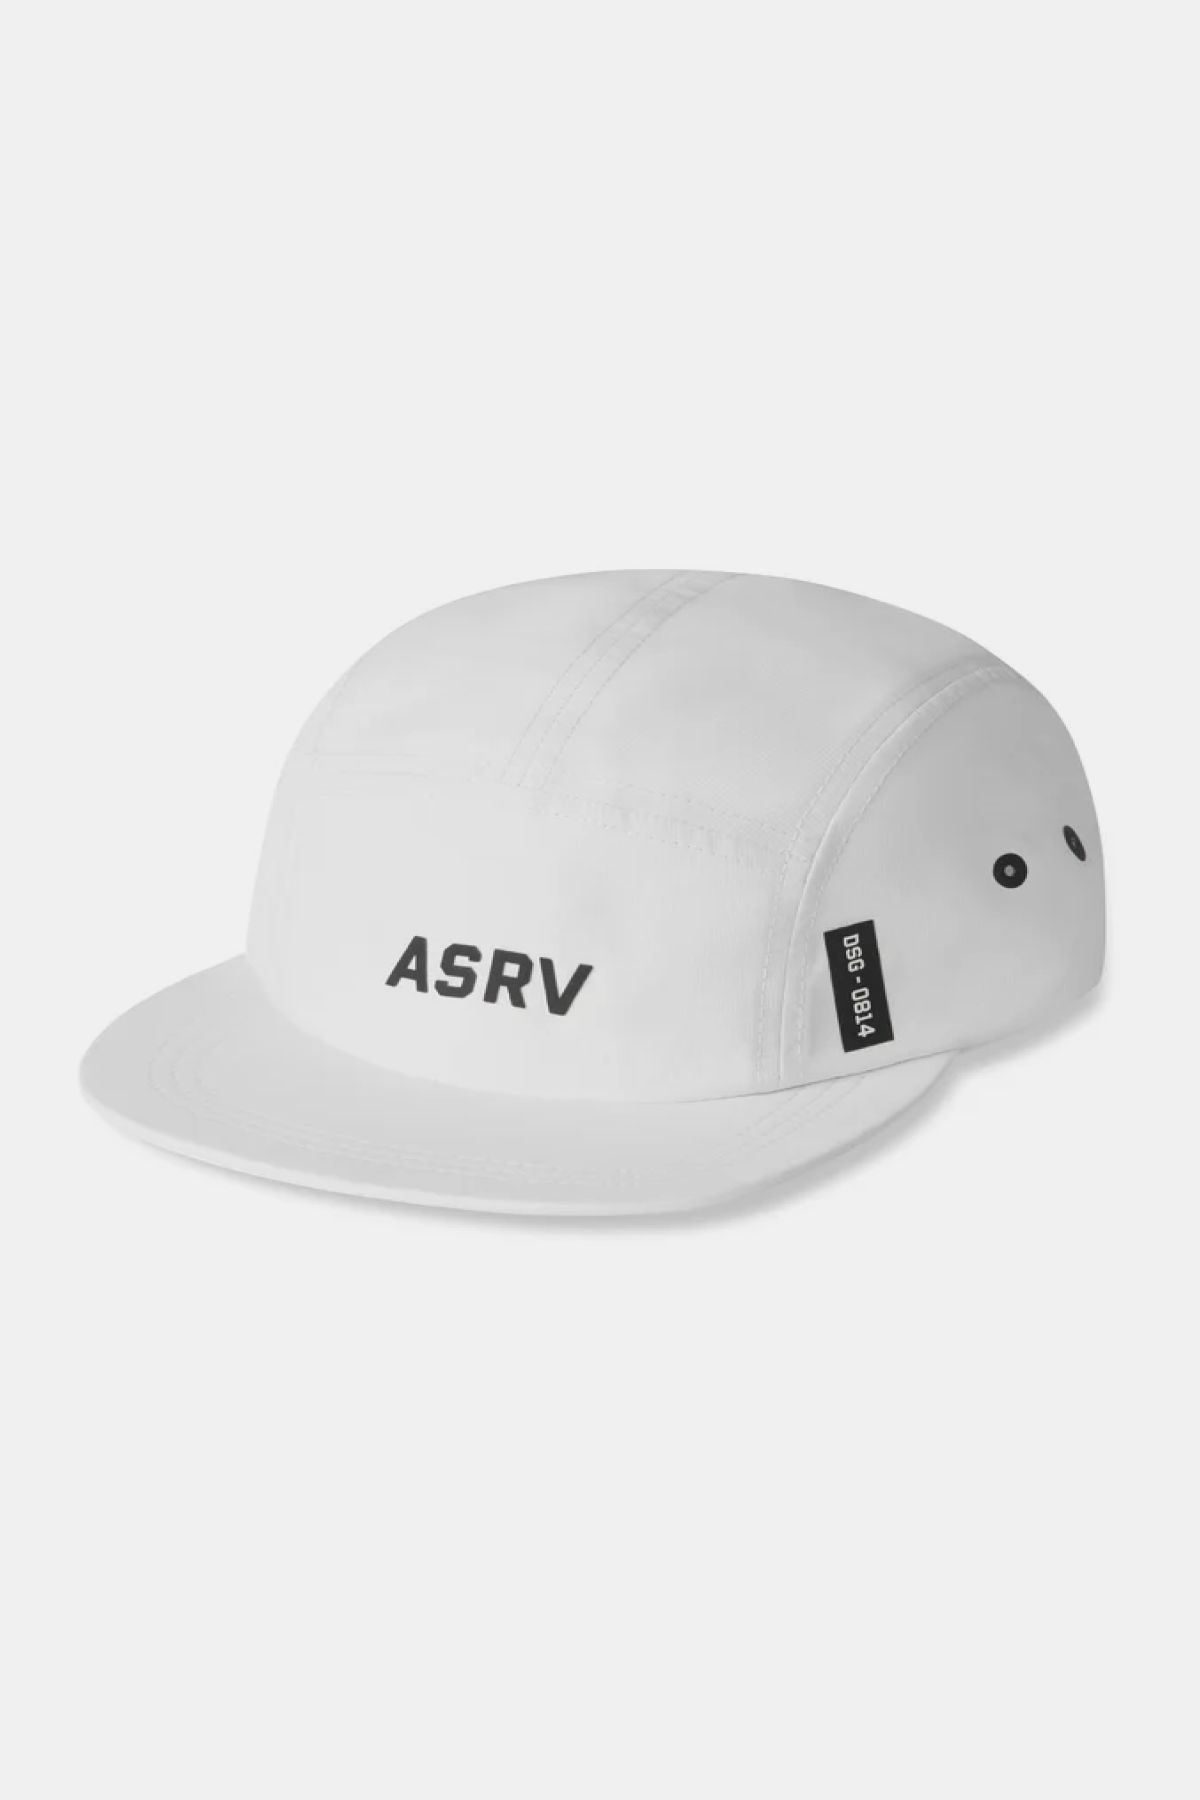 ASRV 5 Panel Run Cap - White